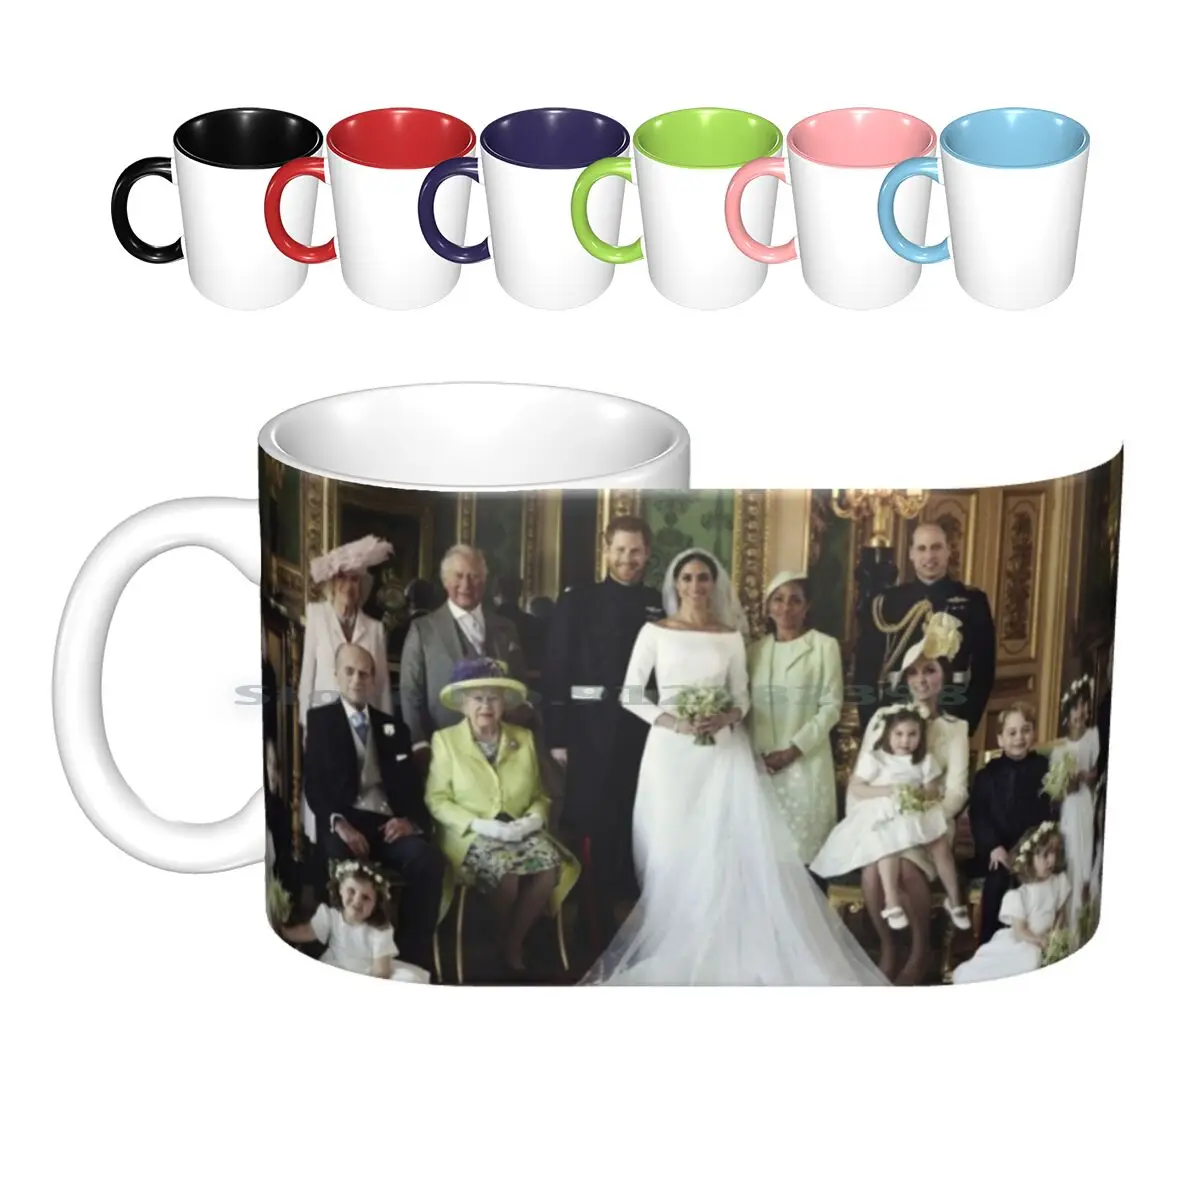 Tazas de cerámica para boda real, tazas de café, leche, té, príncipe Harry y Meghan Markle